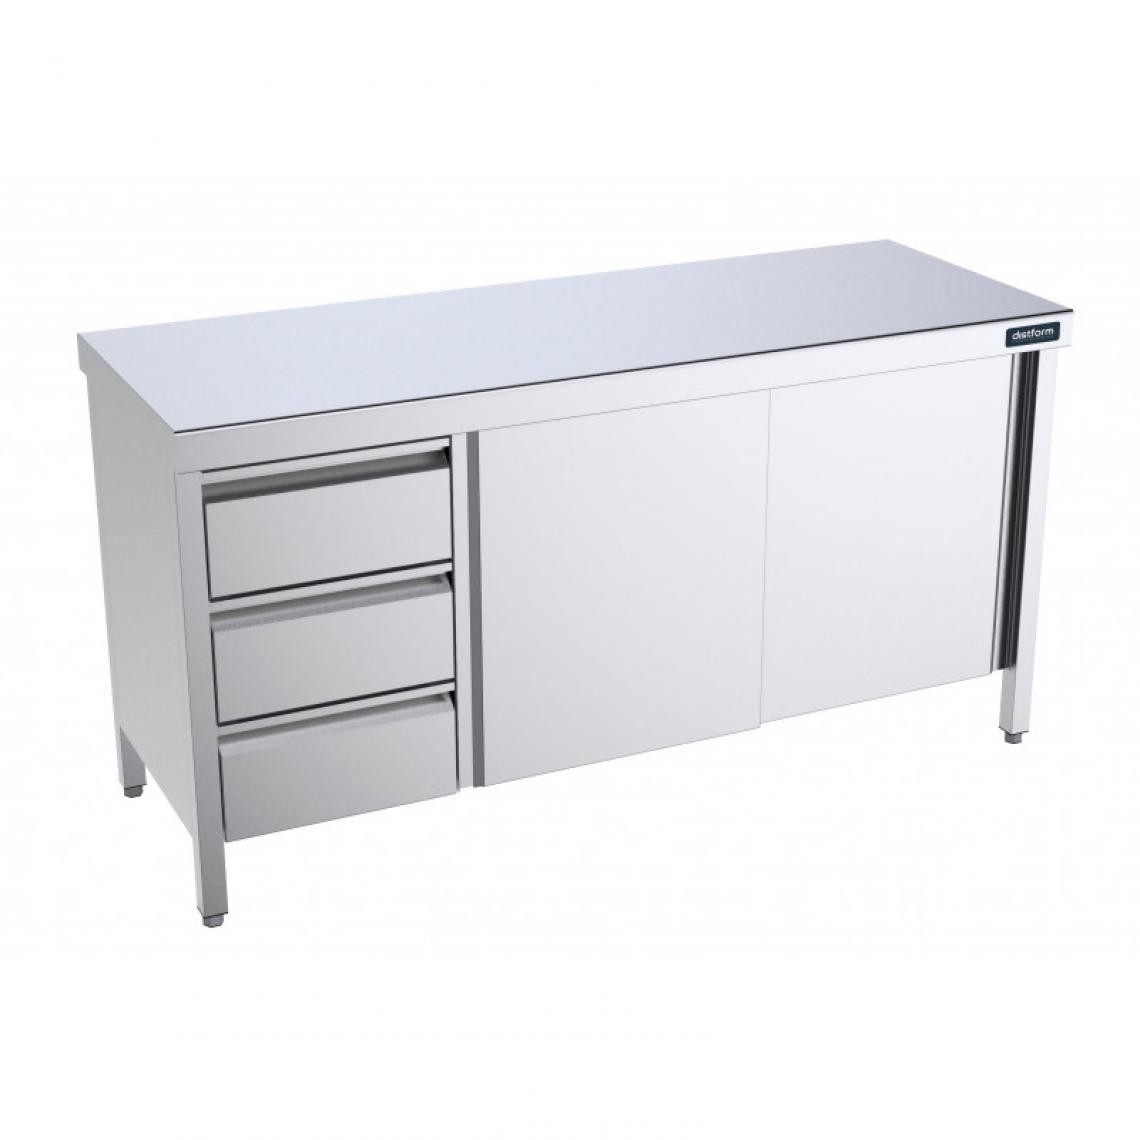 DISTFORM - Table Inox centrale avec portes coulissantes et tiroirs à gauche - Gamme 600 - Distform - Acier inoxydable2400x600 - Tables à manger